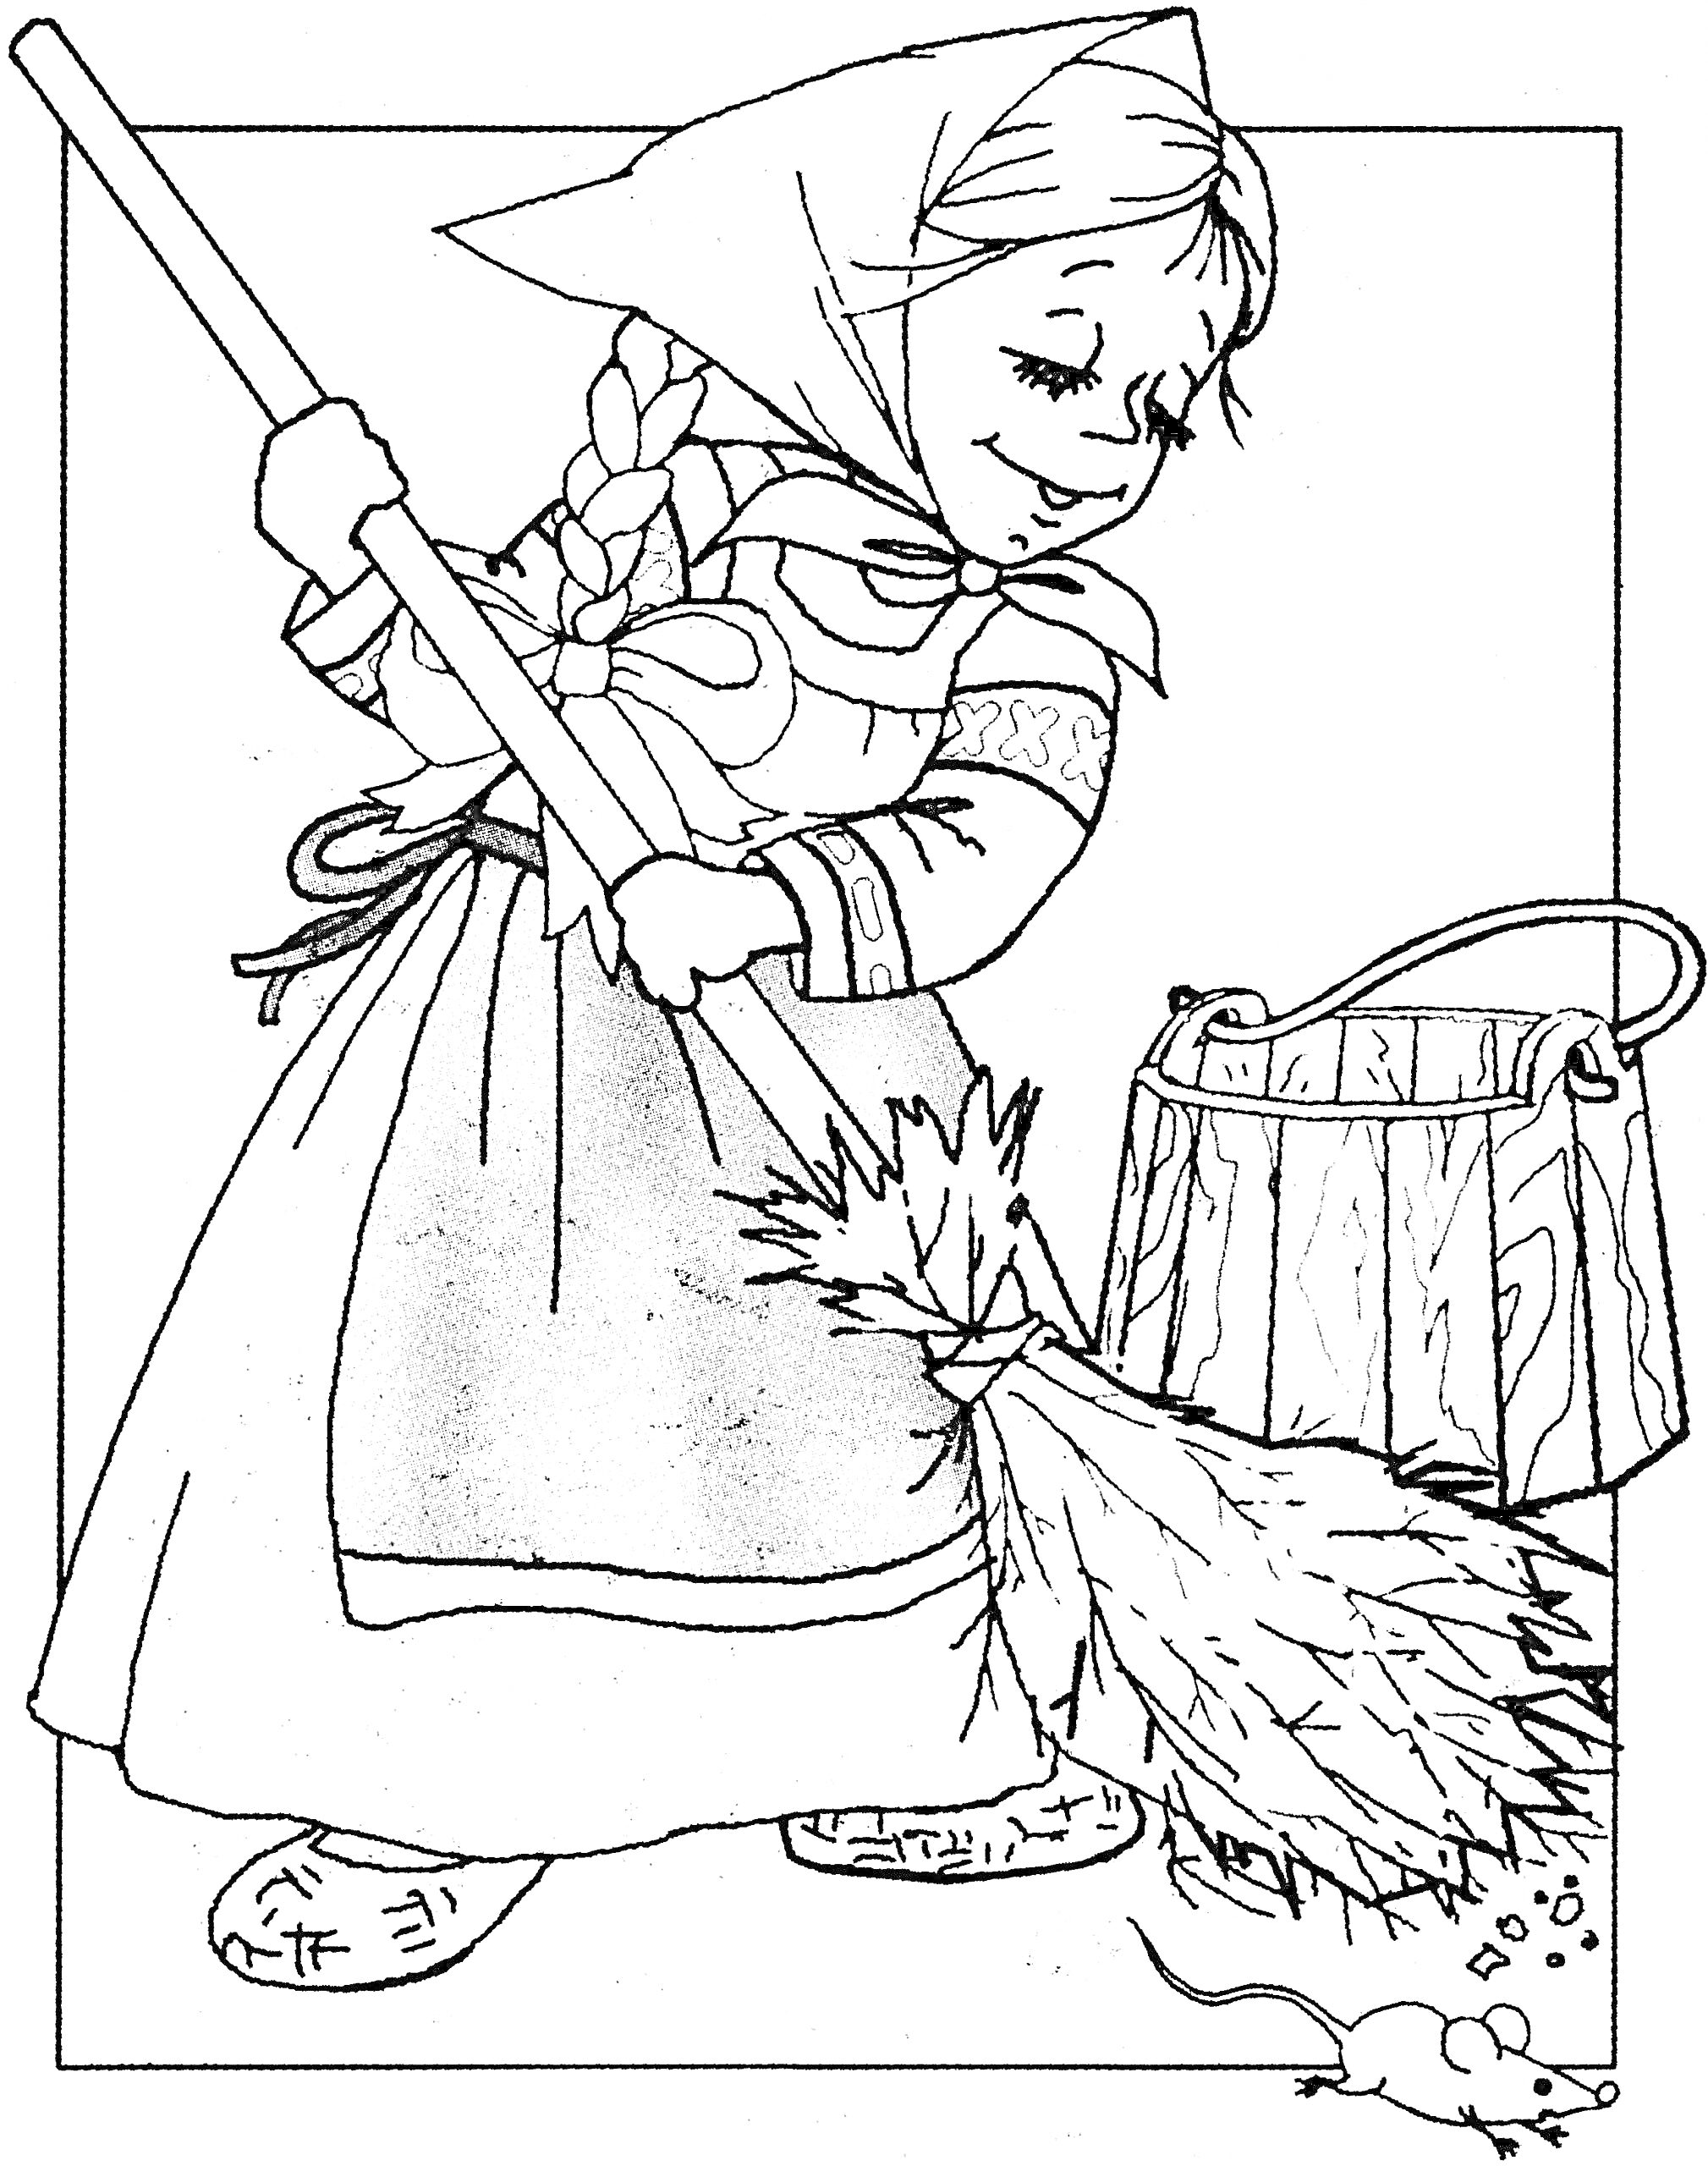 Девочка из мультика с косой и в платке, подметает веником, рядом ведро, под веником мышь